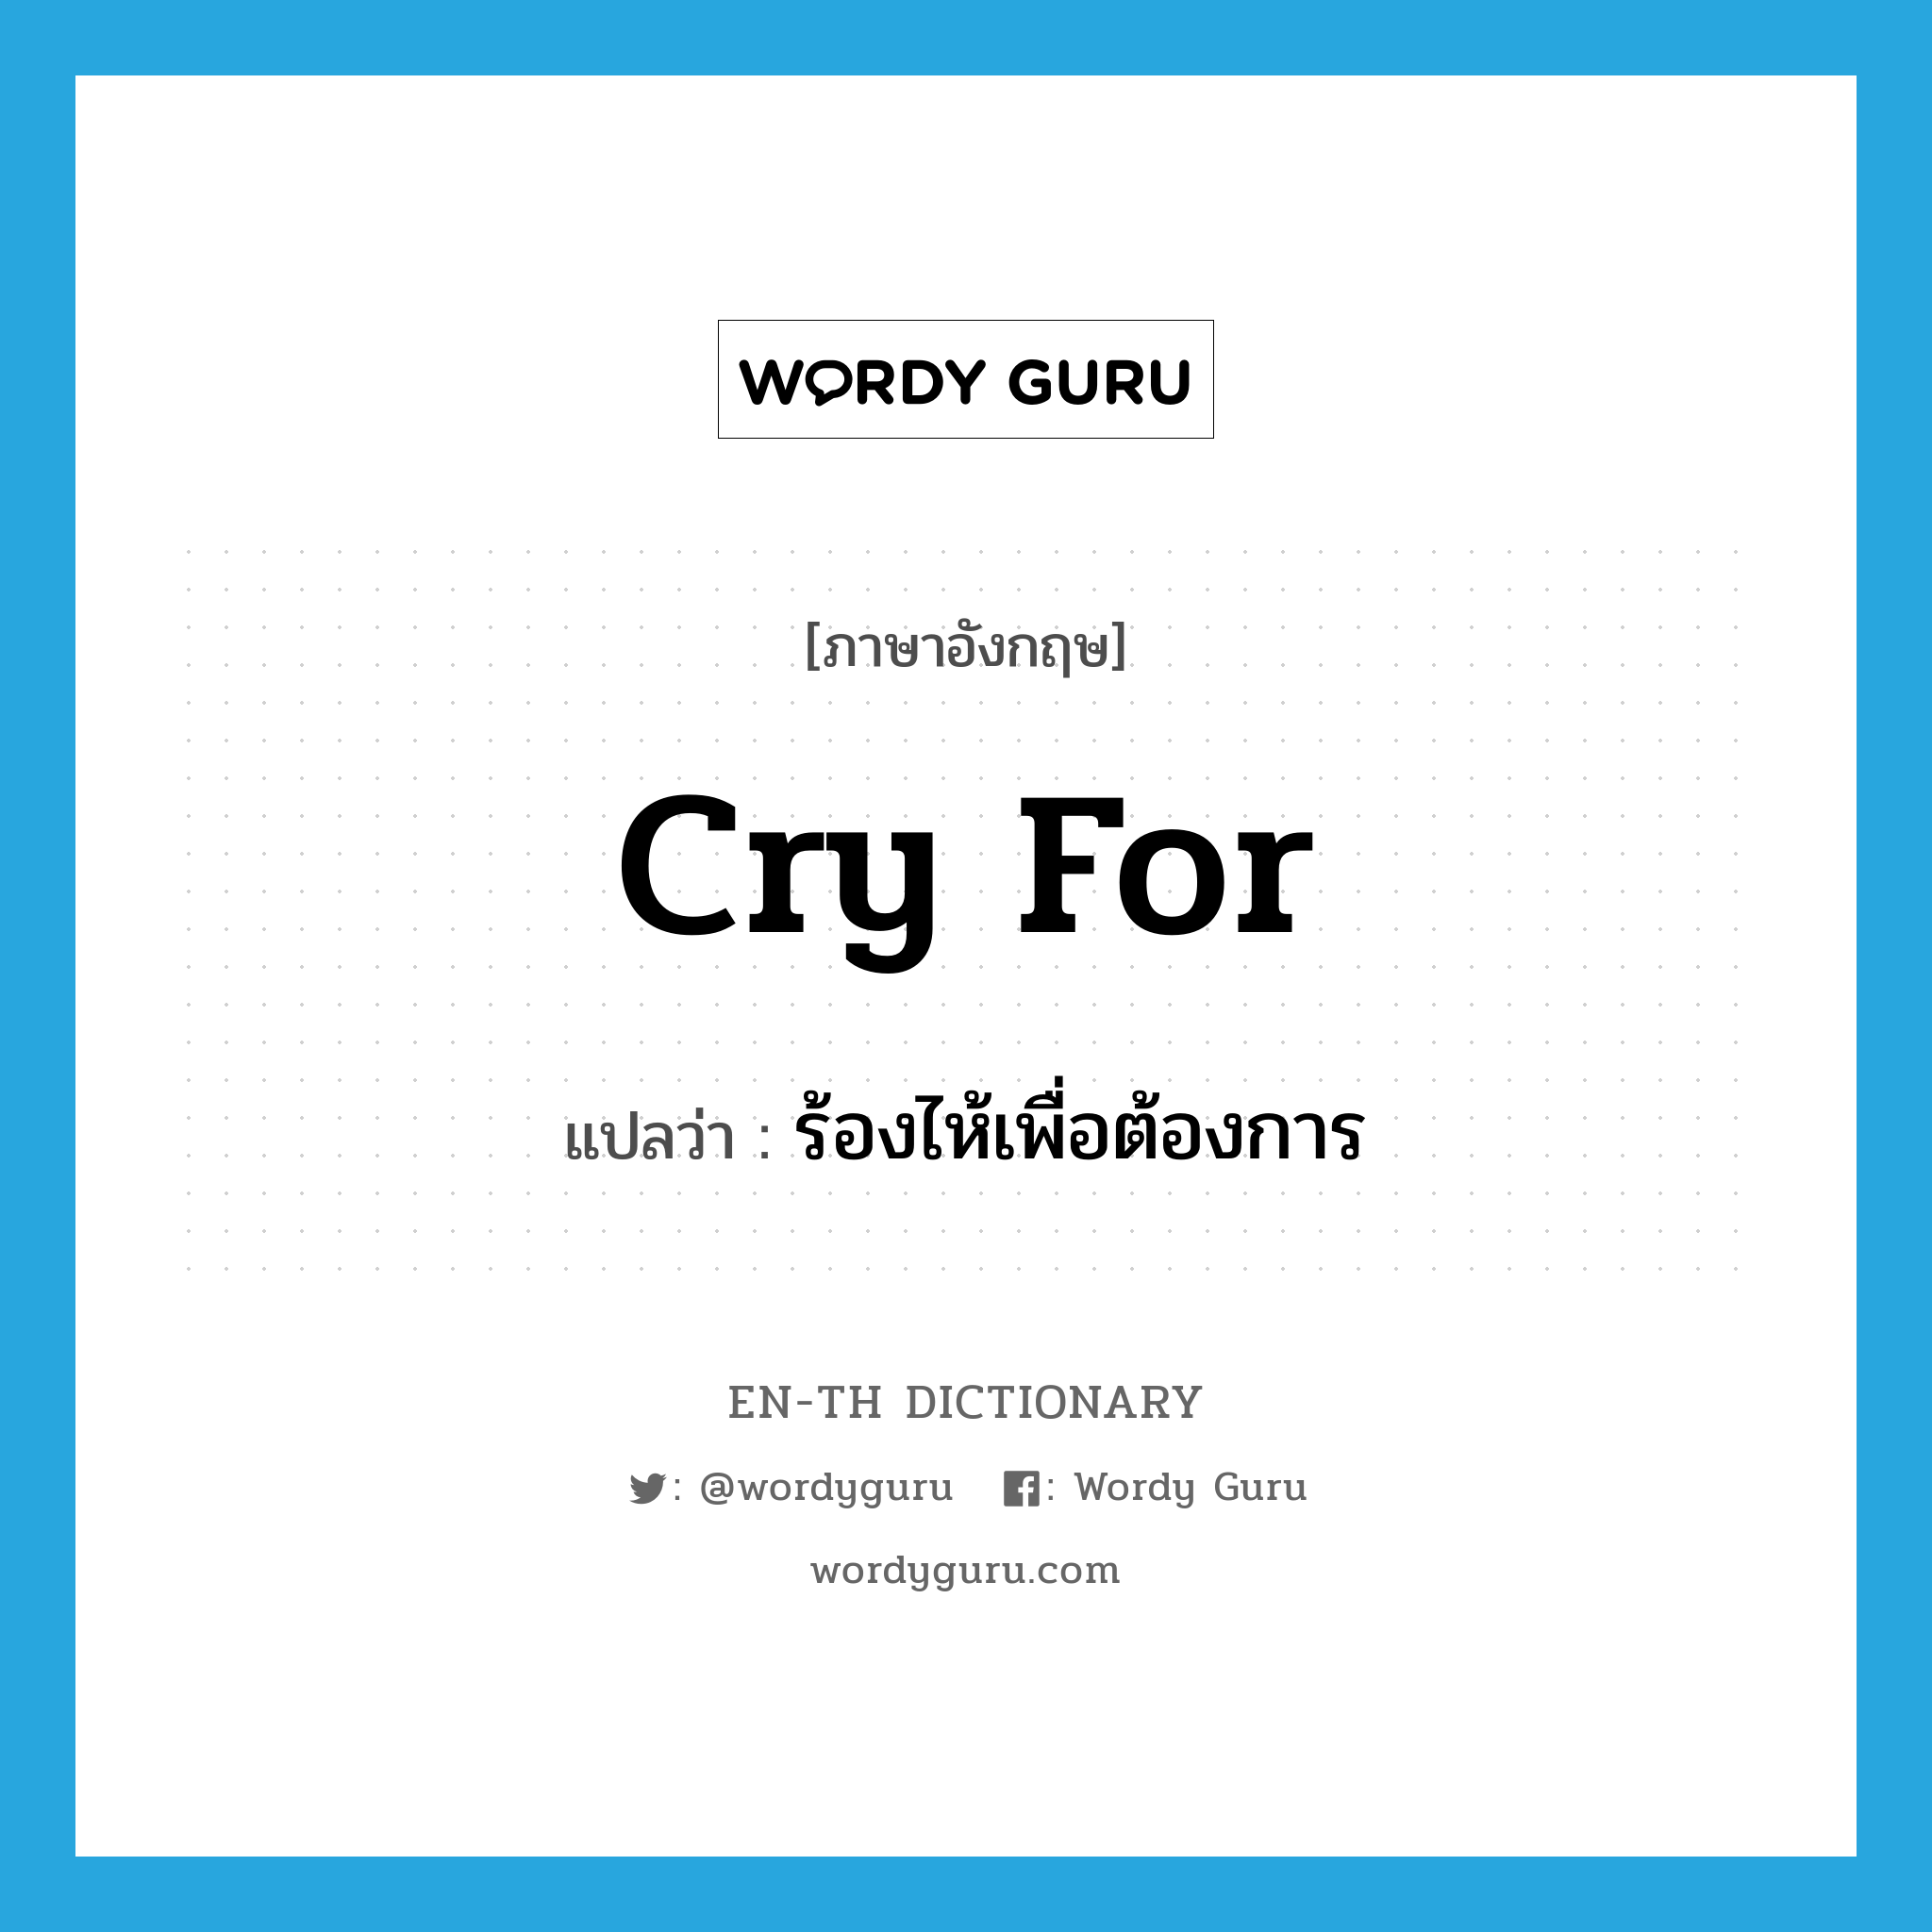 ร้องไห้เพื่อต้องการ ภาษาอังกฤษ?, คำศัพท์ภาษาอังกฤษ ร้องไห้เพื่อต้องการ แปลว่า cry for ประเภท PHRV หมวด PHRV